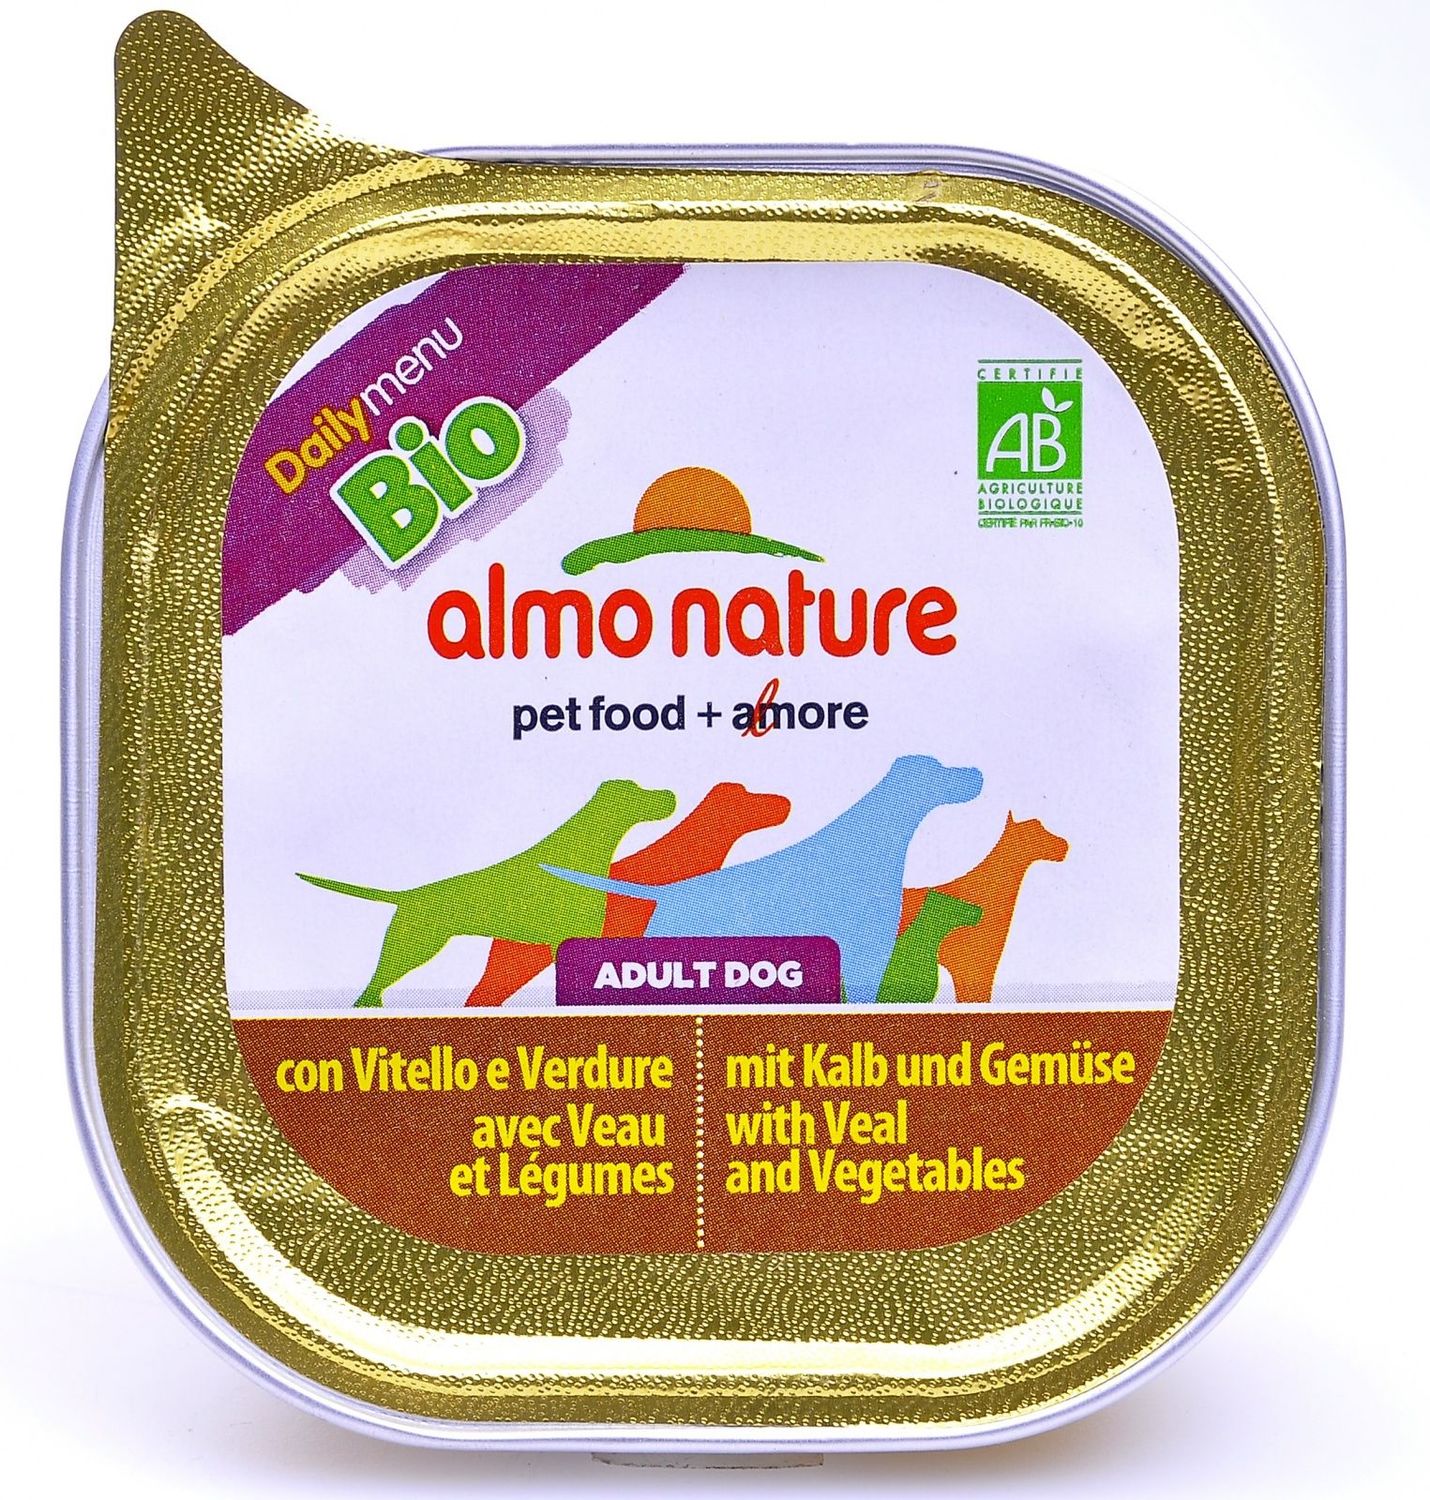 Almo nature (алмо натур) daIlymenu консервы для собак паштет с телятиной и овощами 32 шт по 100 гр&nbsp;